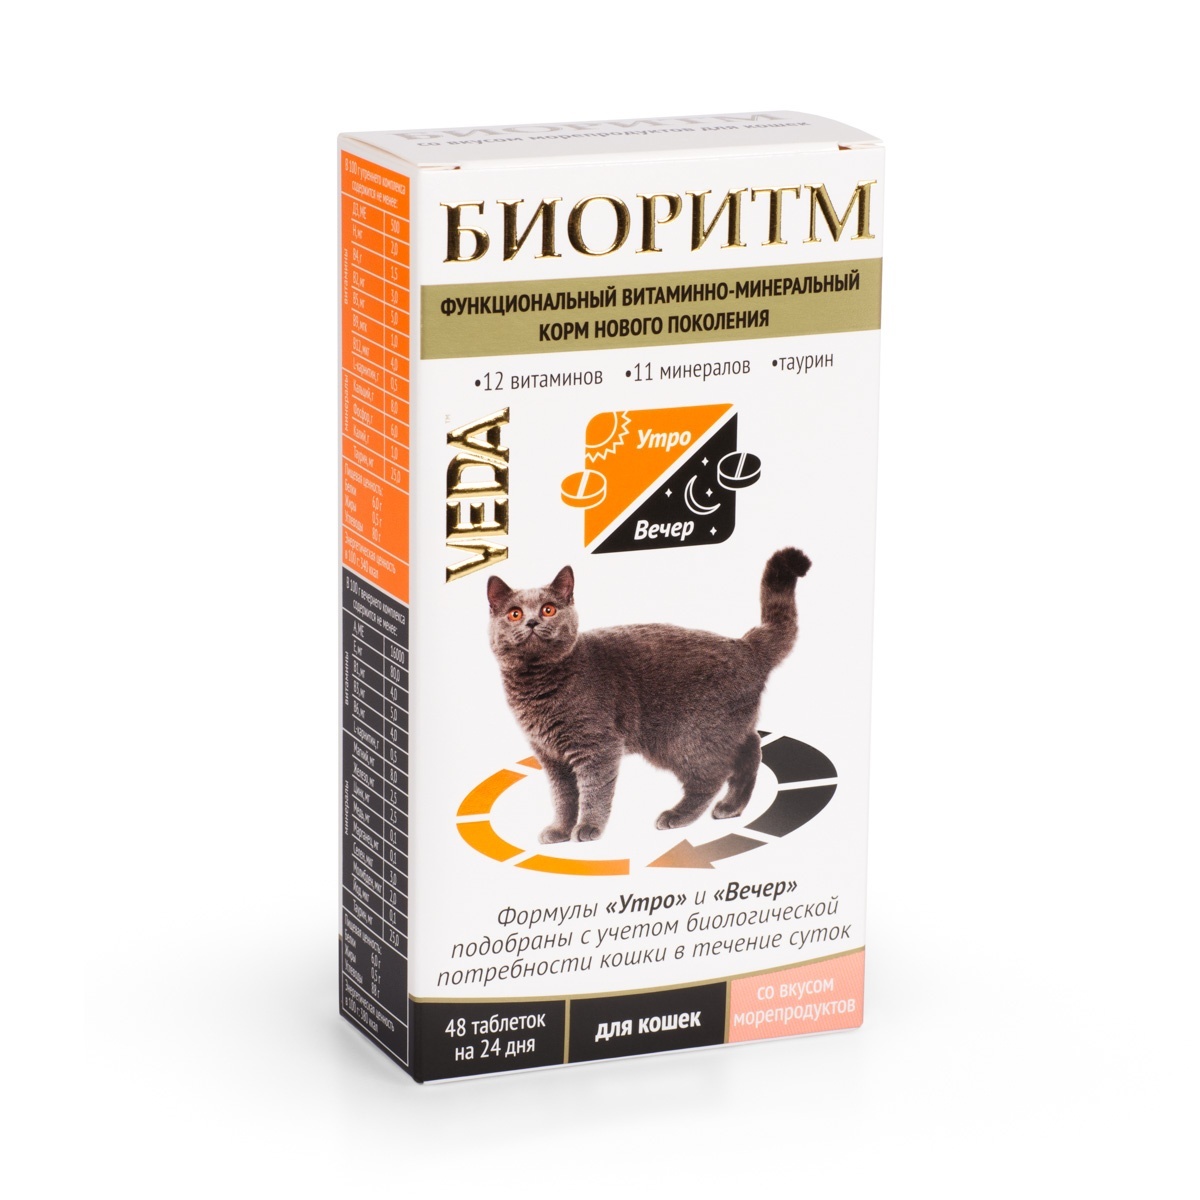 Веда Веда биоритм со вкусом морепродуктов для кошек (235 г) цена и фото